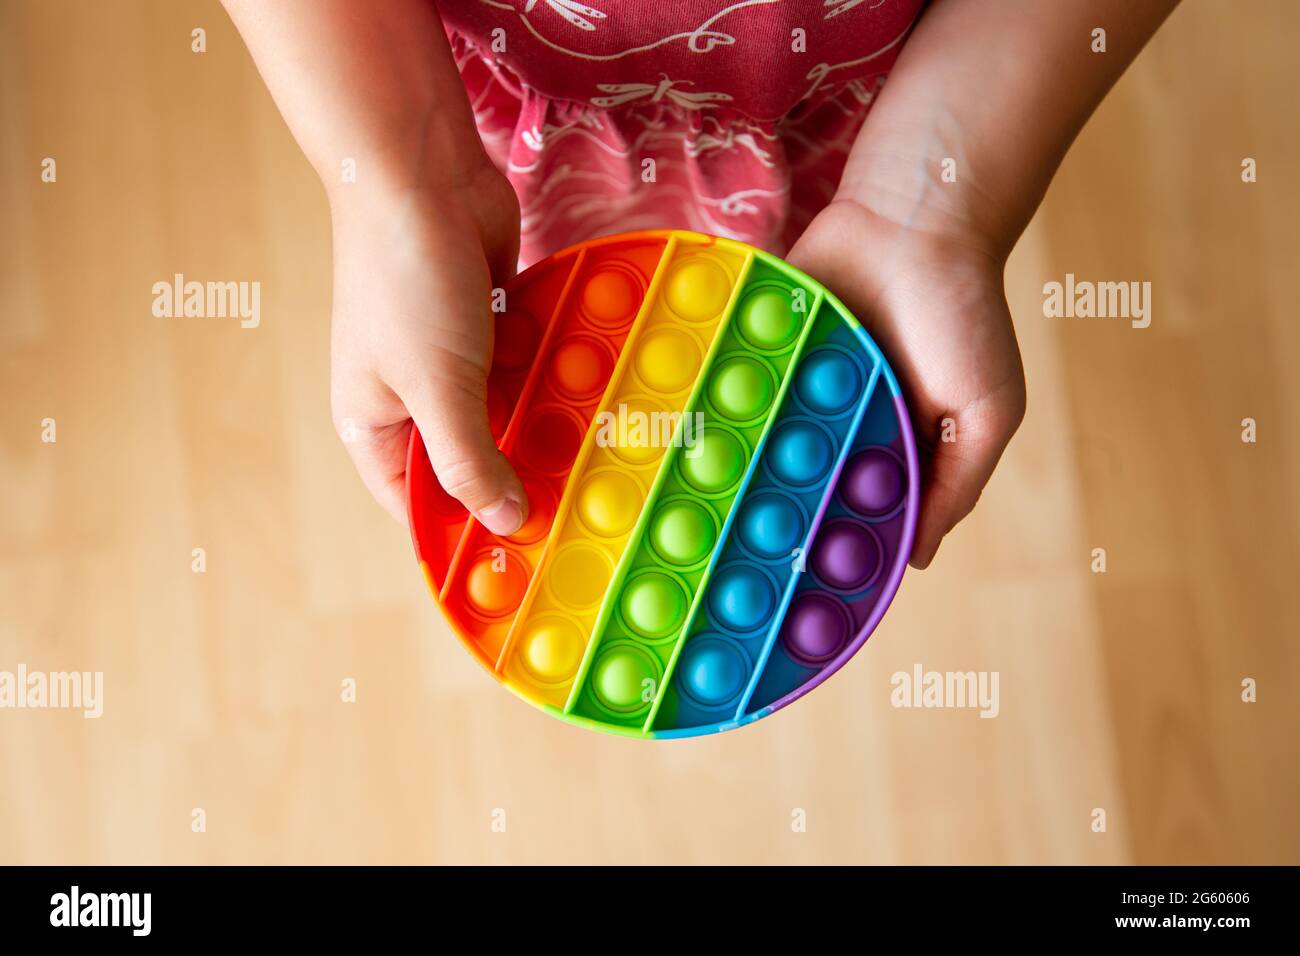 Gros plan sur le jeu d'enfant avec le jouet de violon sensoriel Push pop  Bubble de couleur arc-en-ciel Photo Stock - Alamy